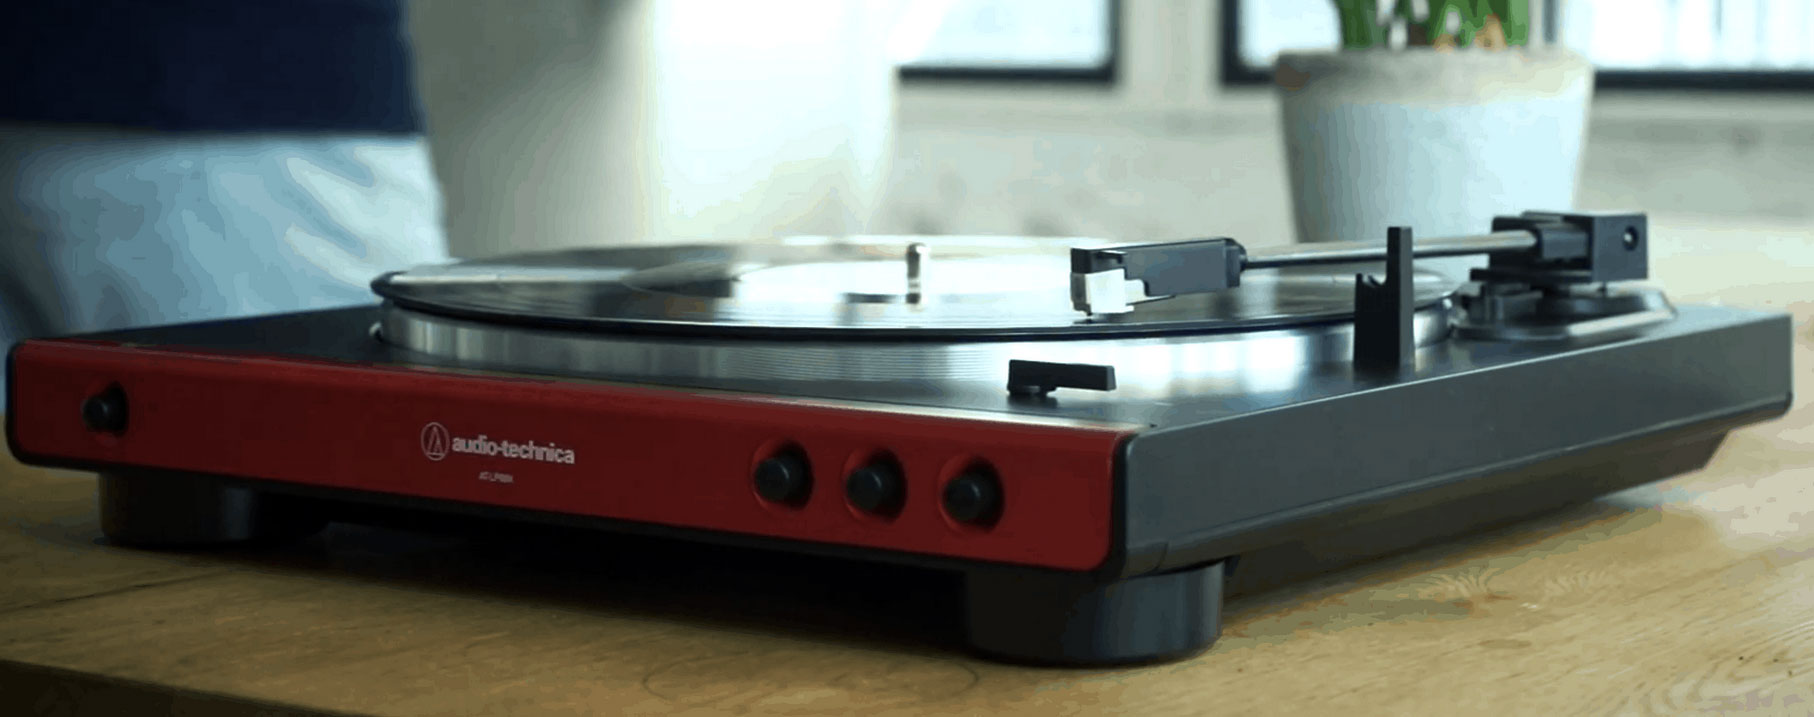 audio technica record player